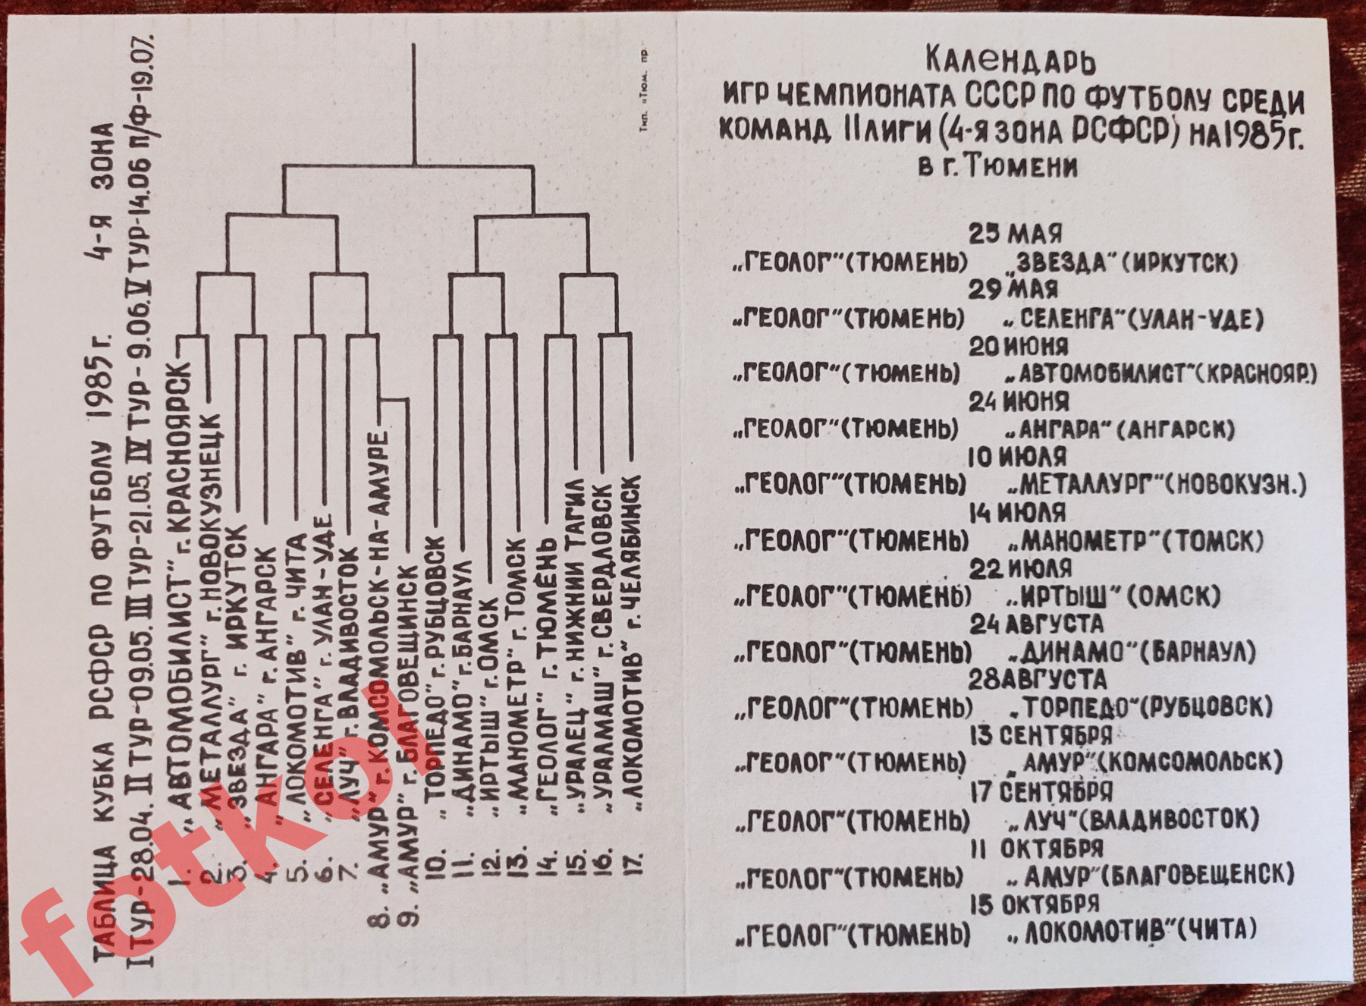 ТЮМЕНЬ 1985 Лист Календарь игр ДОМ + ВЫЕЗД, шахматка